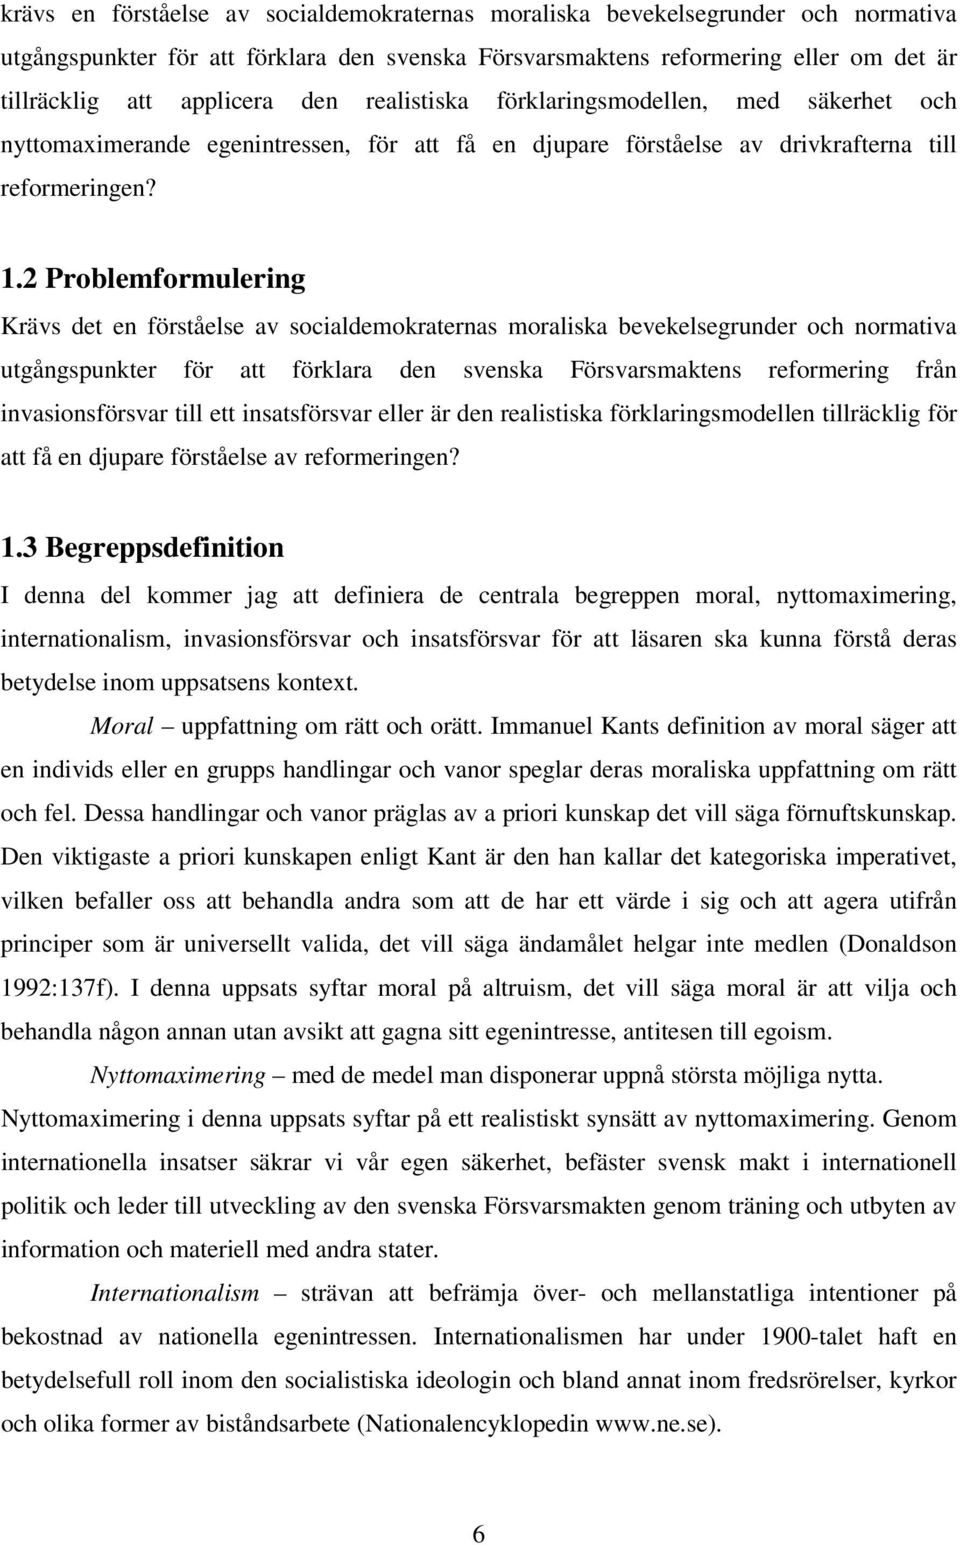 2 Problemformulering Krävs det en förståelse av socialdemokraternas moraliska bevekelsegrunder och normativa utgångspunkter för att förklara den svenska Försvarsmaktens reformering från